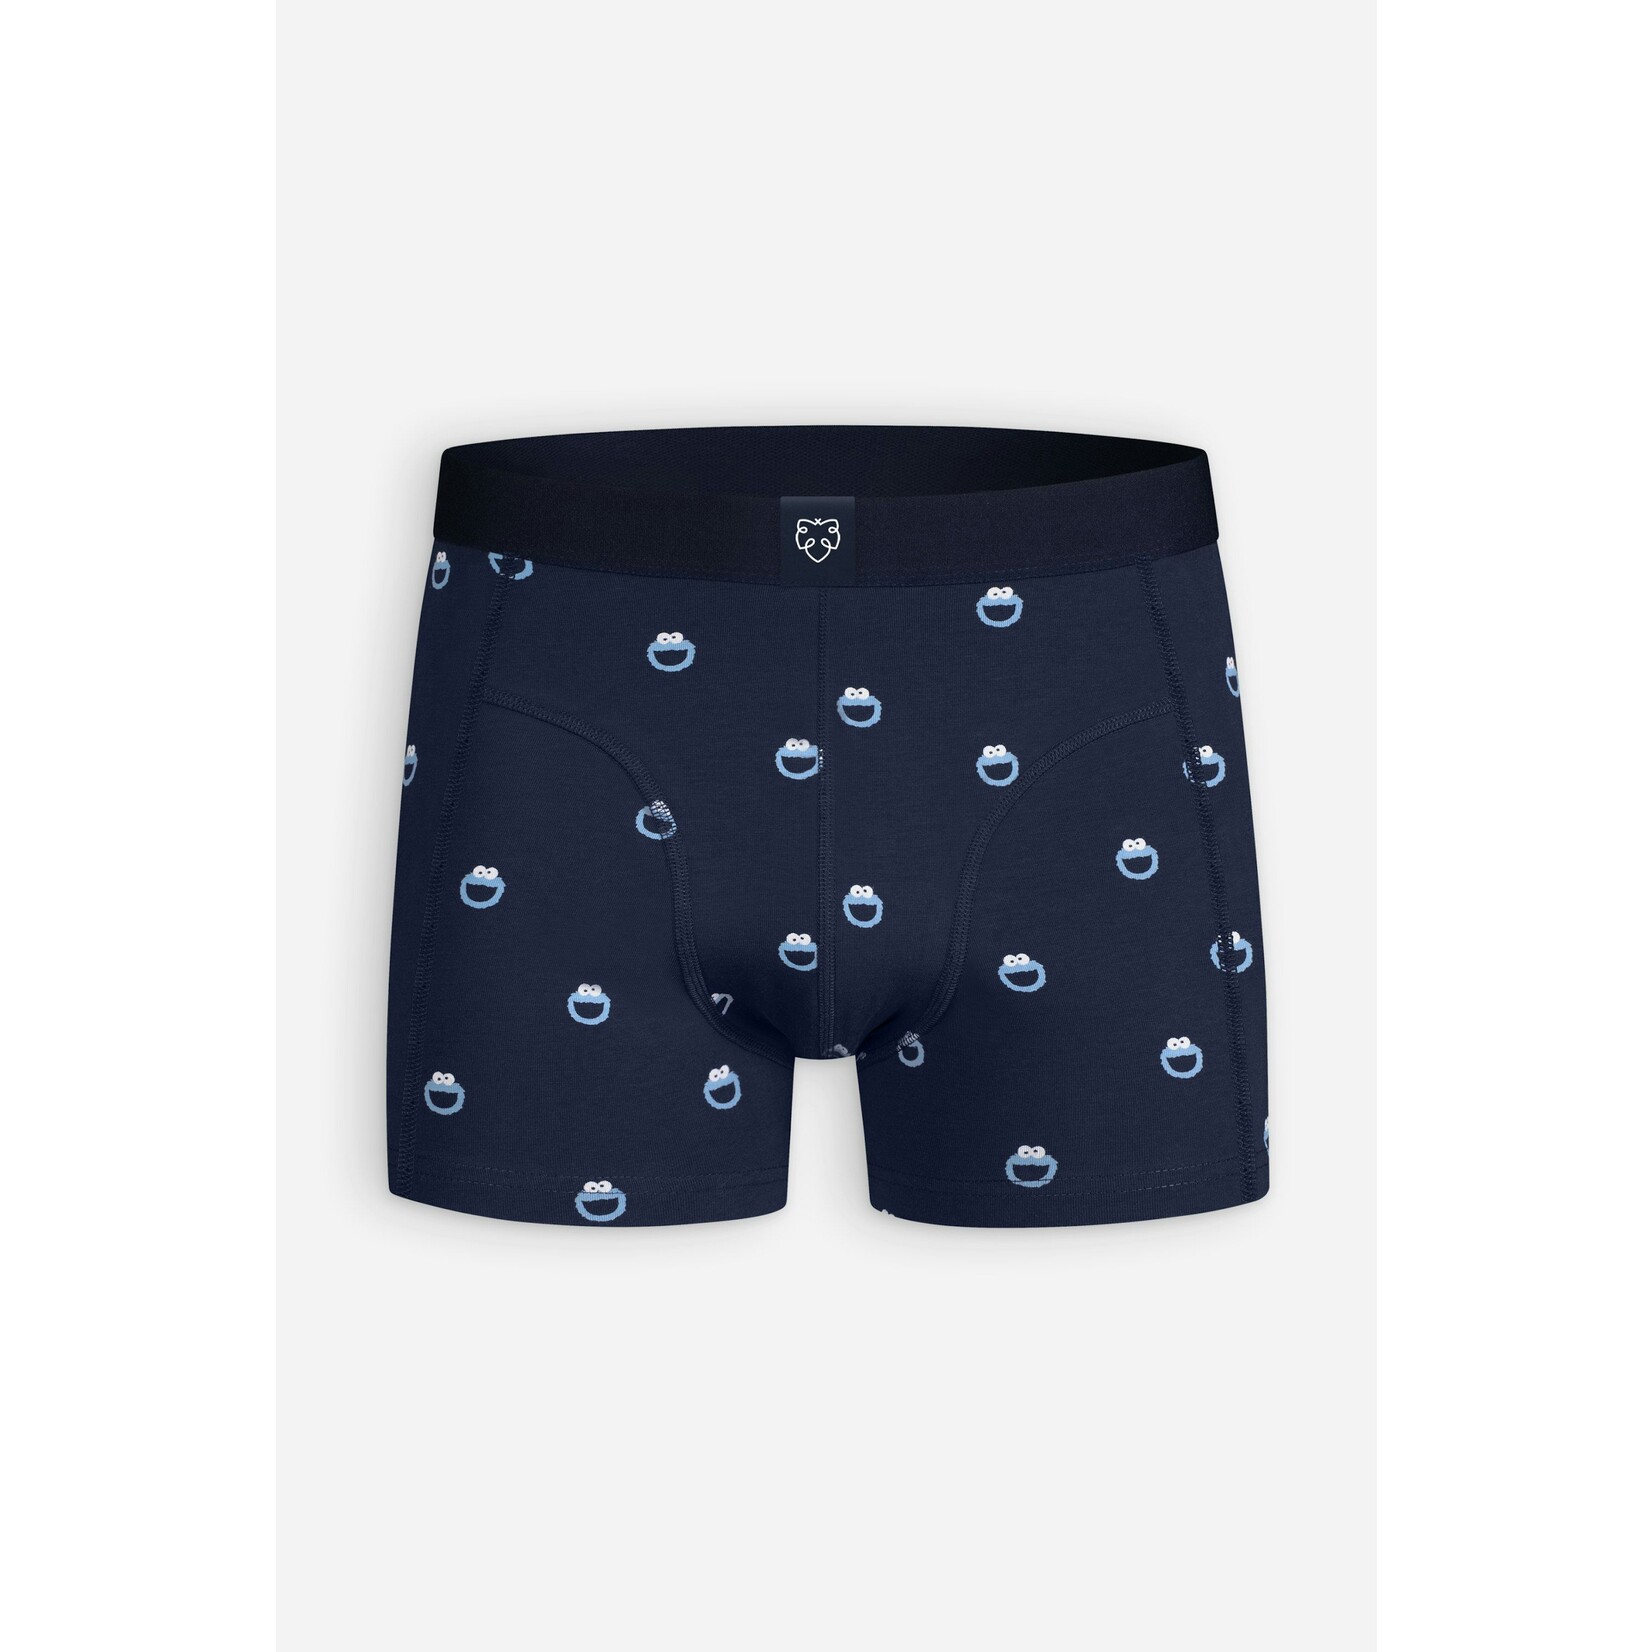 A-dam Underwear boxer Navy Cookie Monster